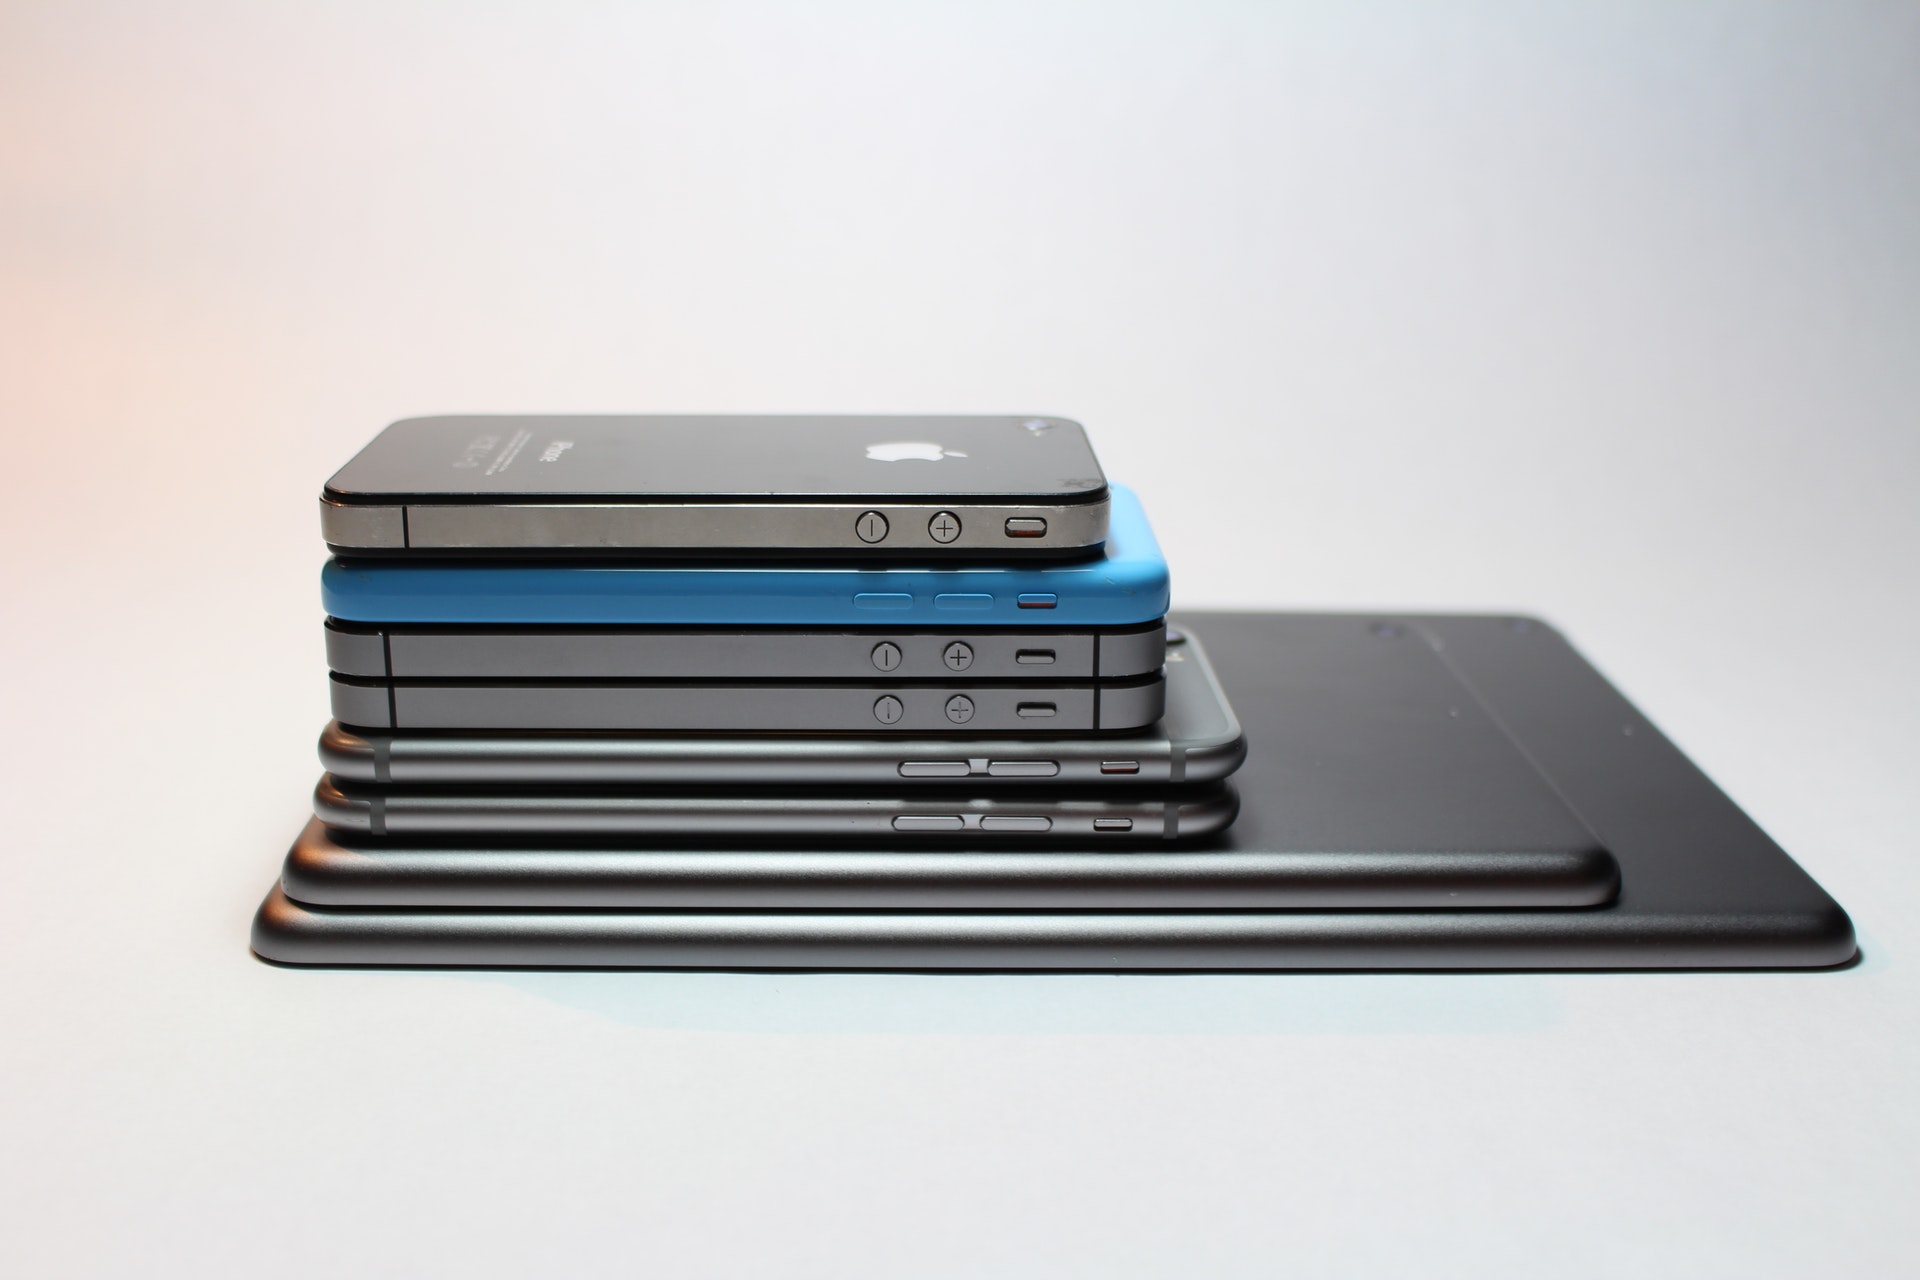 歴代iphoneの画面サイズ インチ数一覧 Iphone過去モデルのケースサイズ比較 Iphone格安sim通信